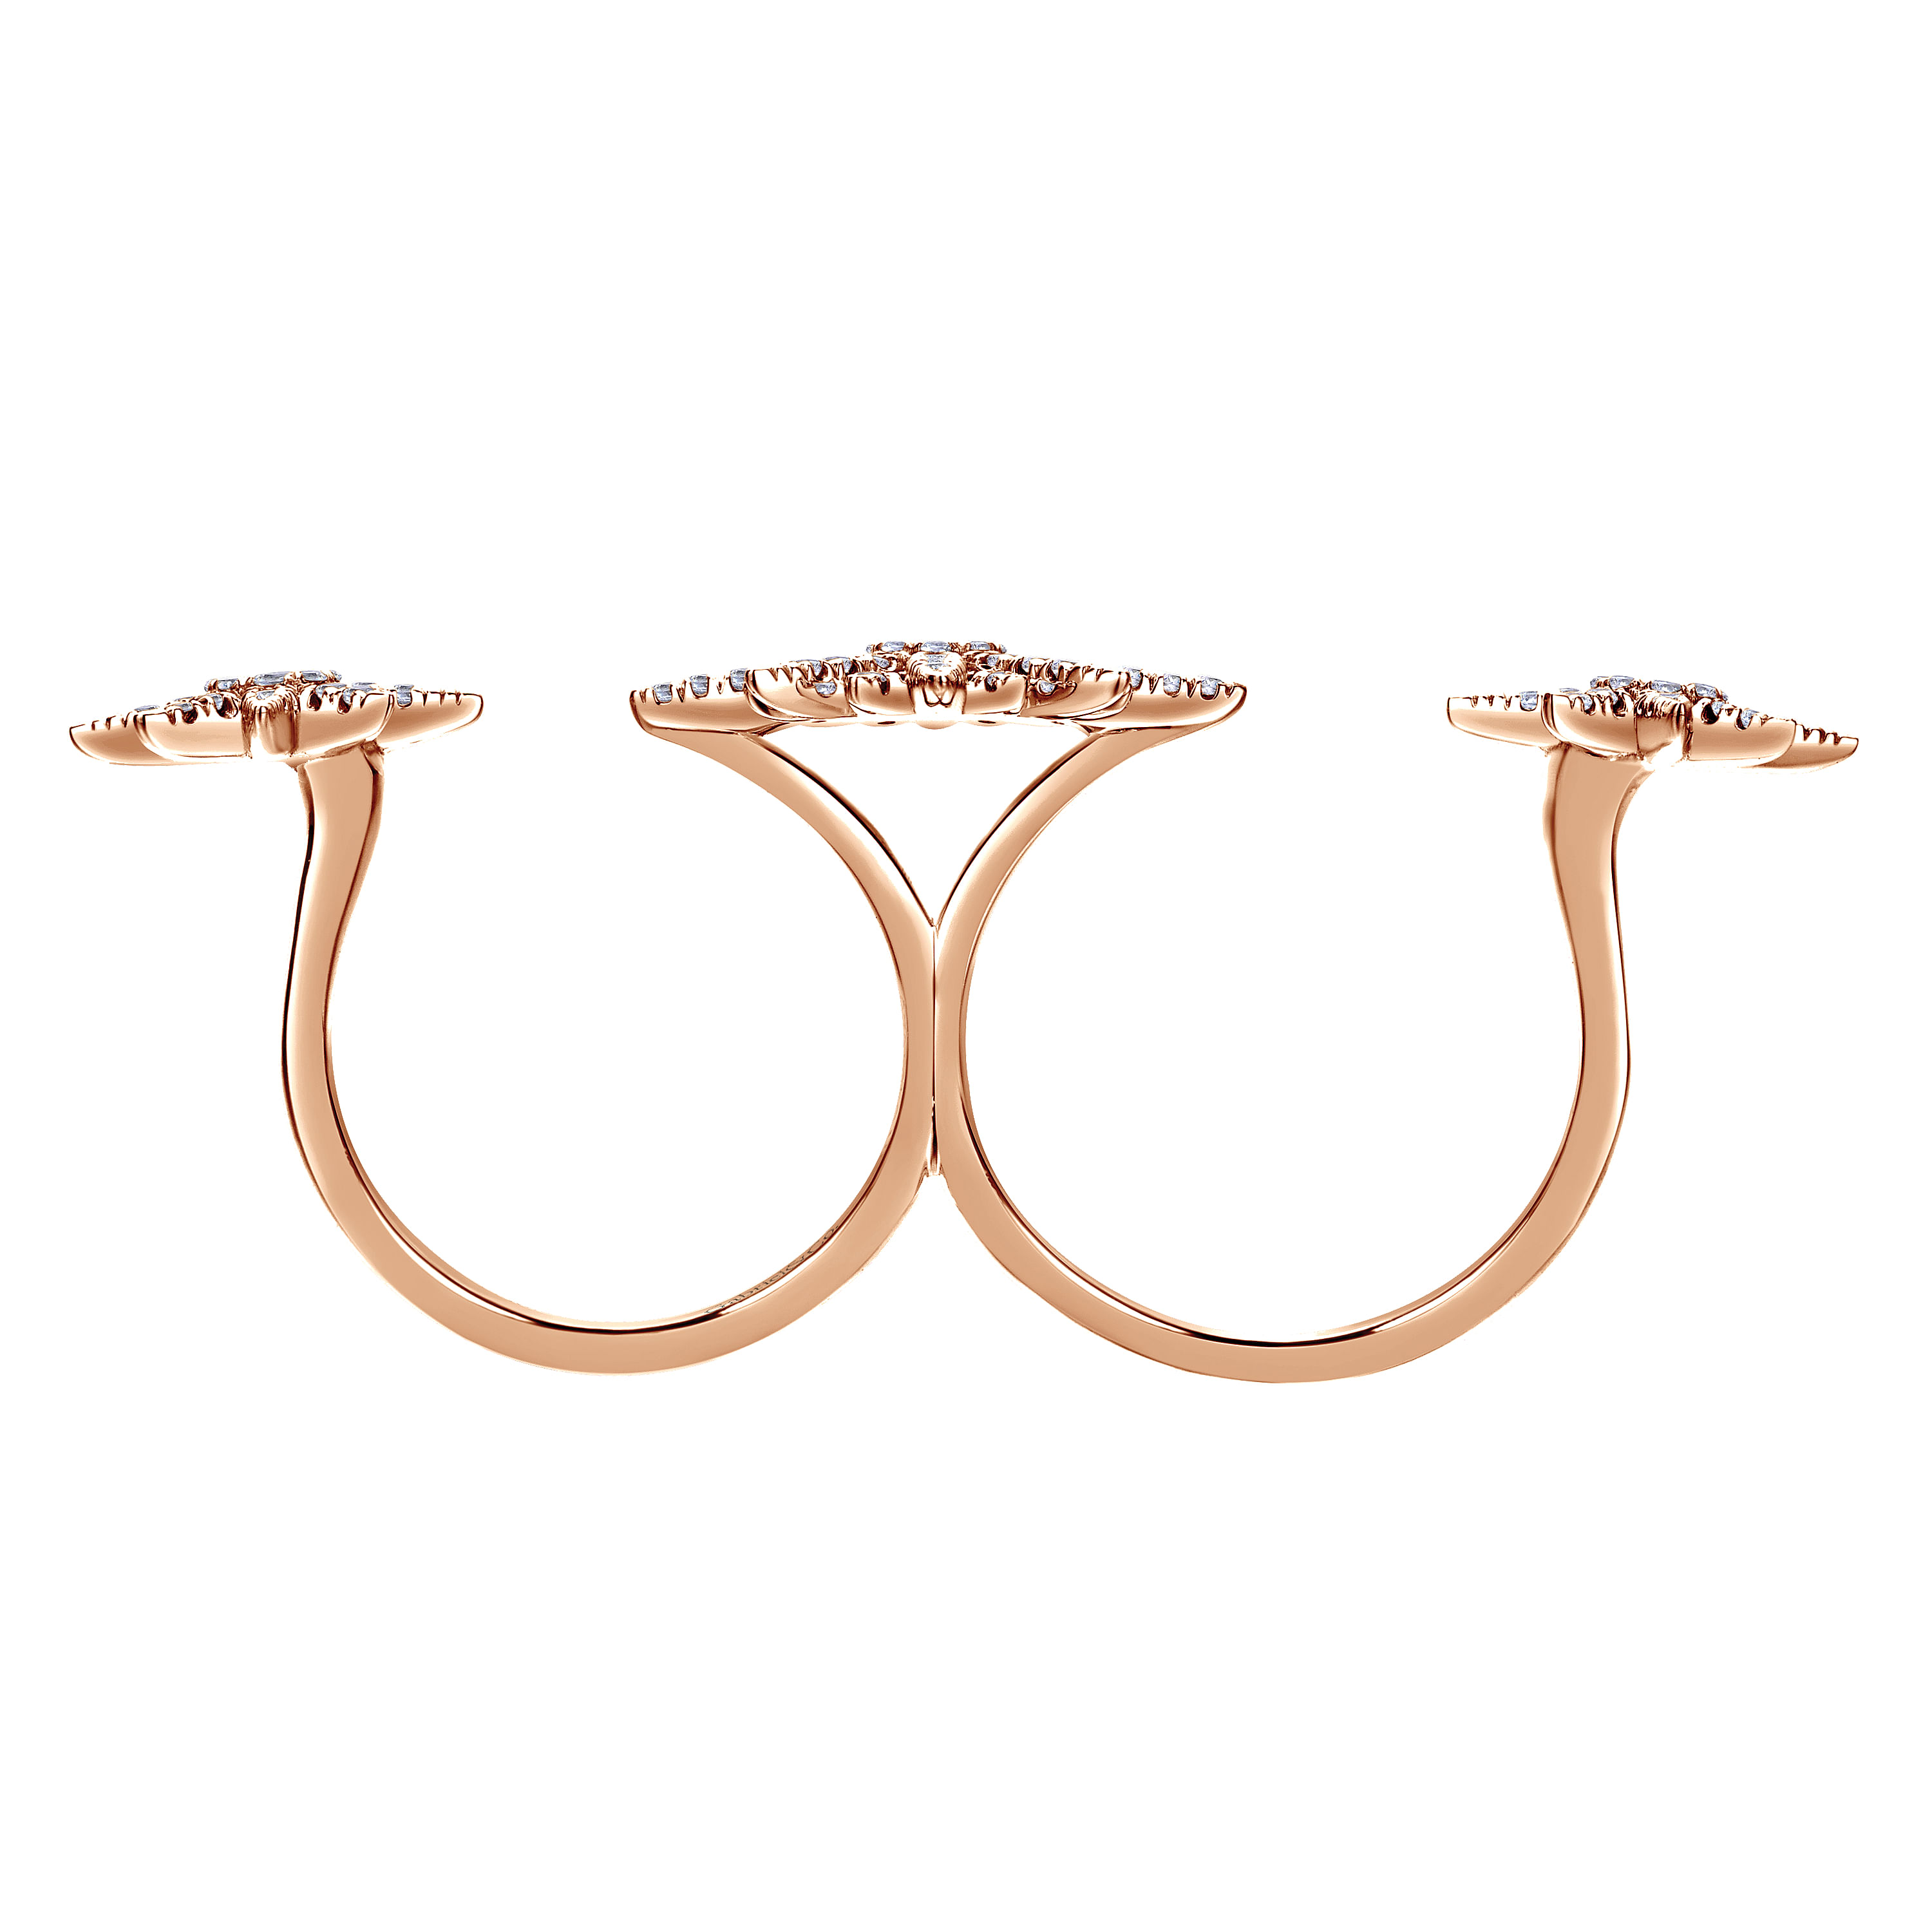 14K Rose Gold Diamond Ladies Ring